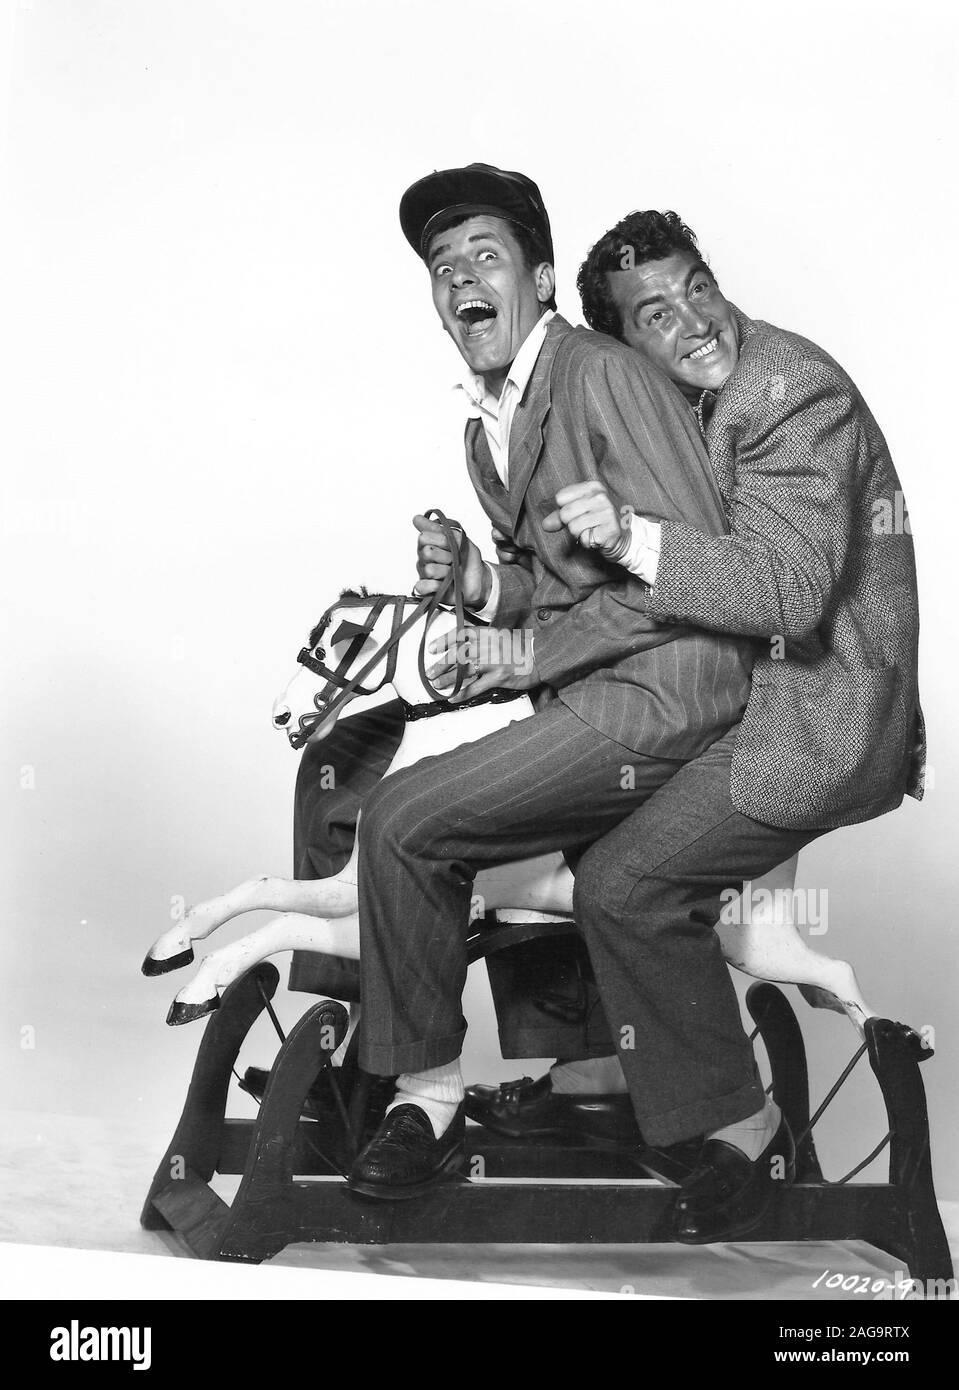 JERRY LEWIS et Dean Martin dans l'ARGENT DE LA MAISON (1953), réalisé par  George Marshall. Credit : PARAMOUNT PICTURES / Album Photo Stock - Alamy